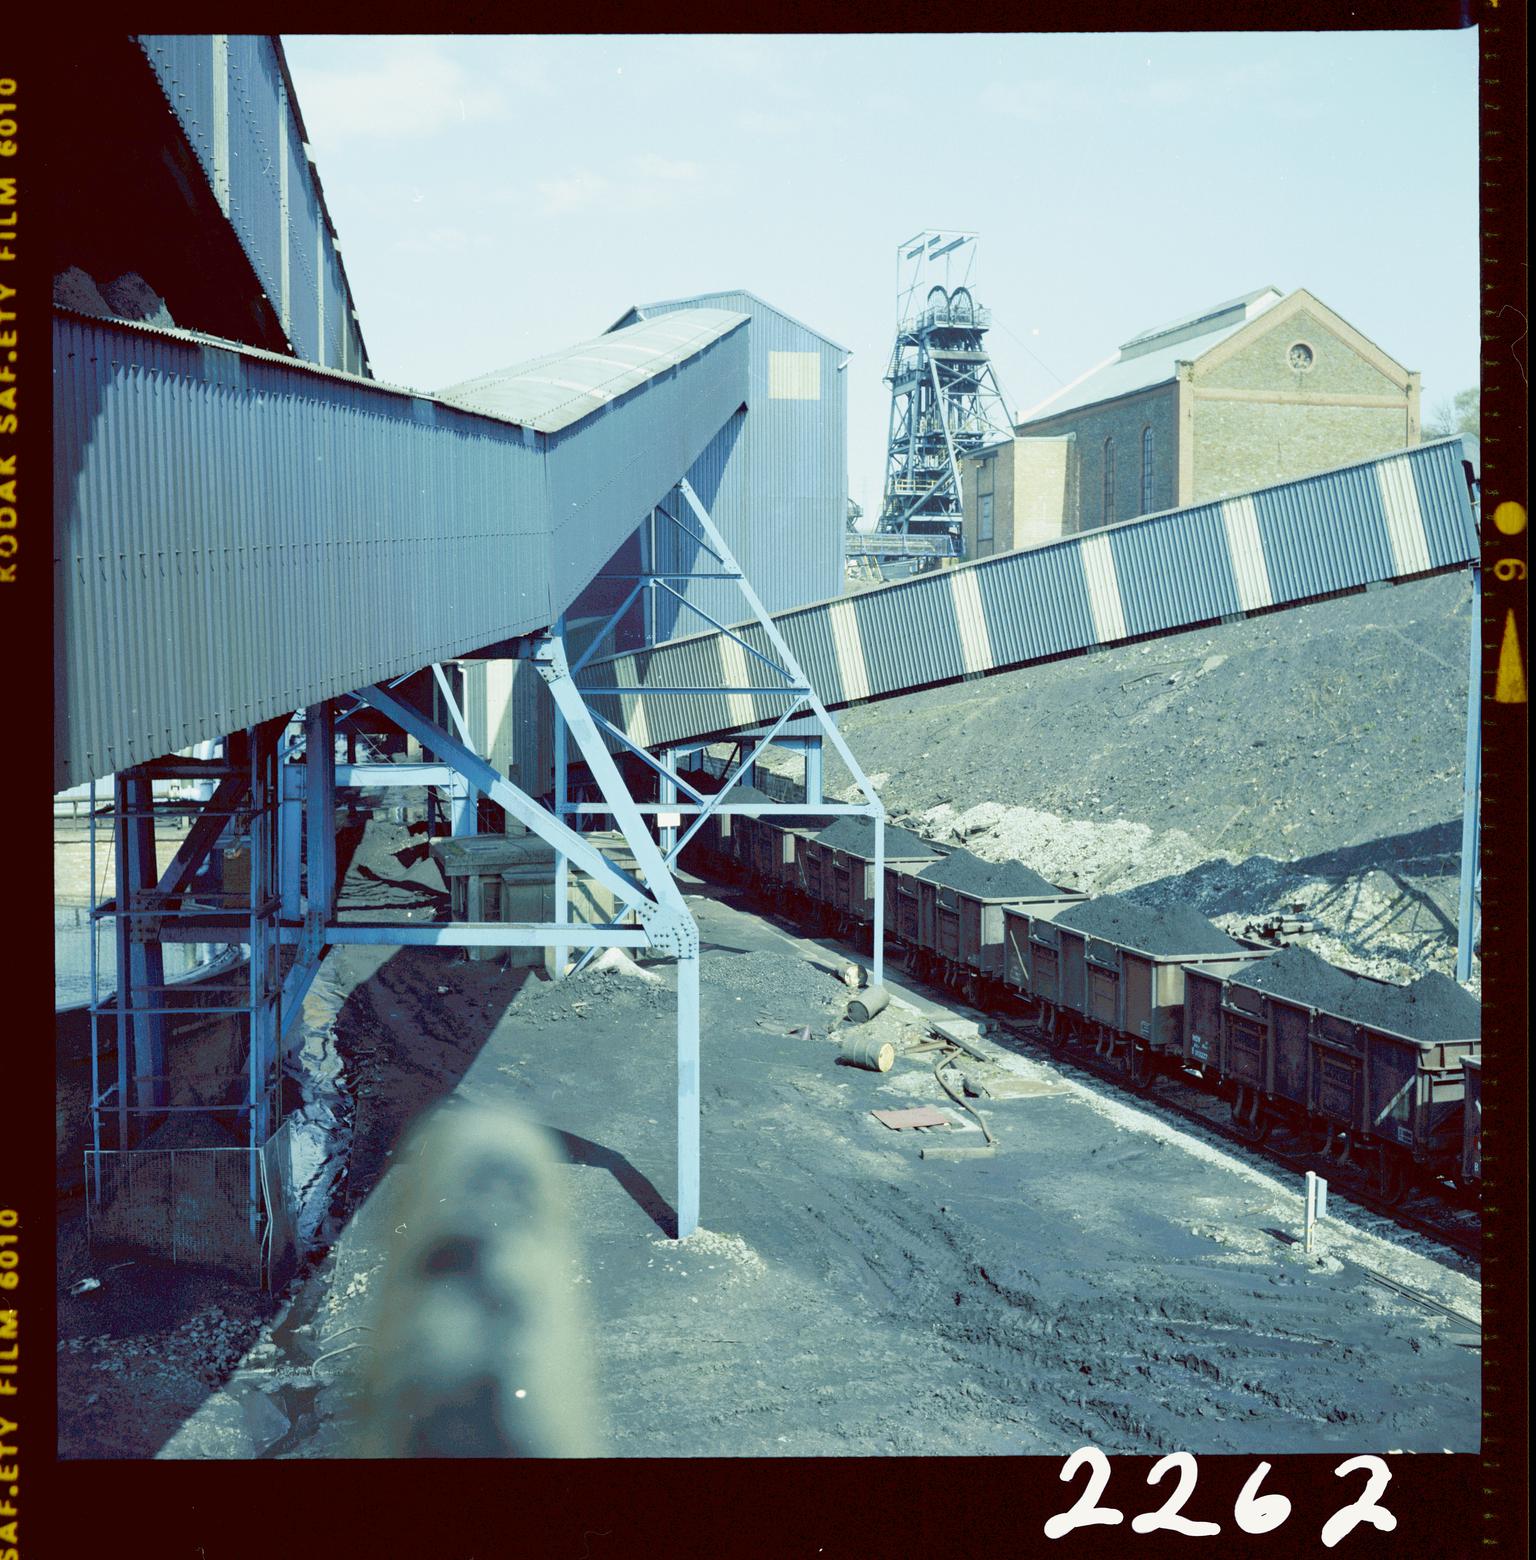 Oakdale Colliery, negative